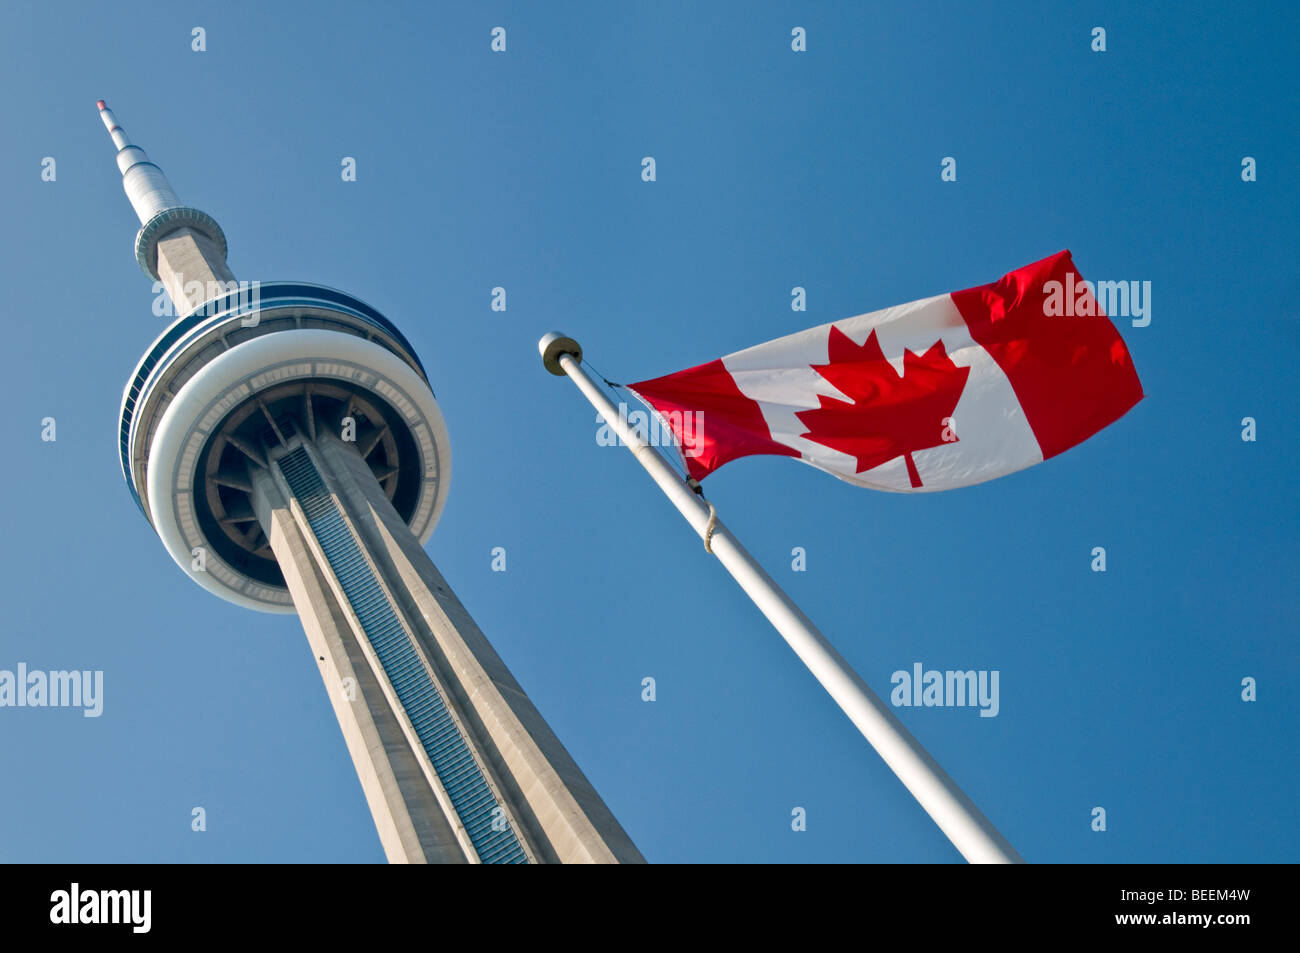 La Tour CN et du drapeau national du Canada, Toronto, Ontario, Canada, Amérique du Nord Banque D'Images